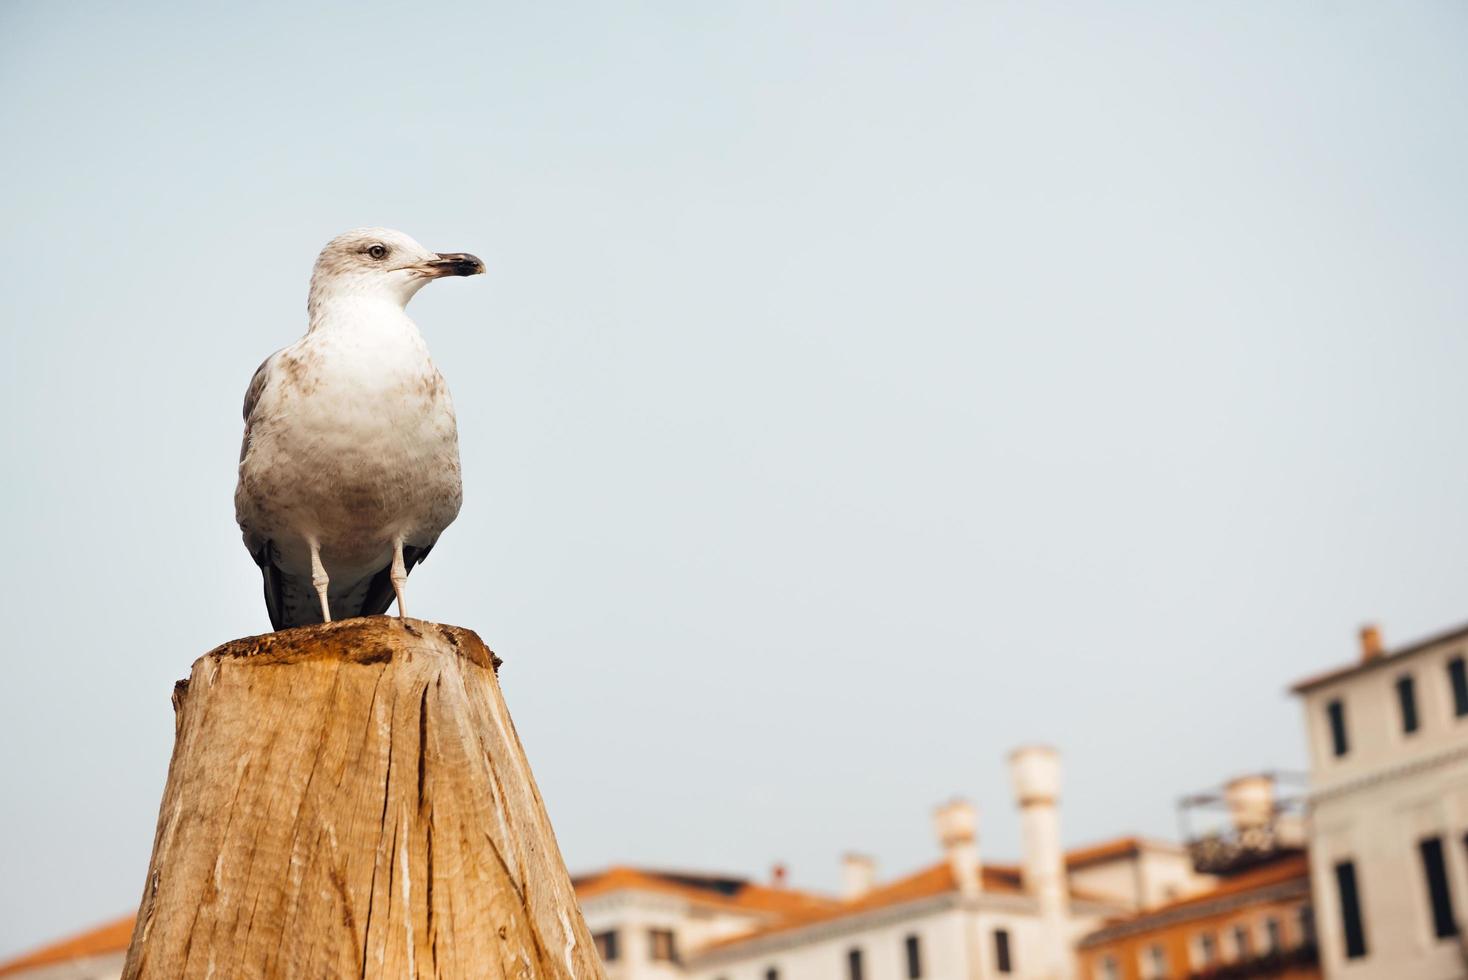 een zeemeeuwvogel zit op een blok hout tegen de achtergrond van Venetiaanse huizen foto